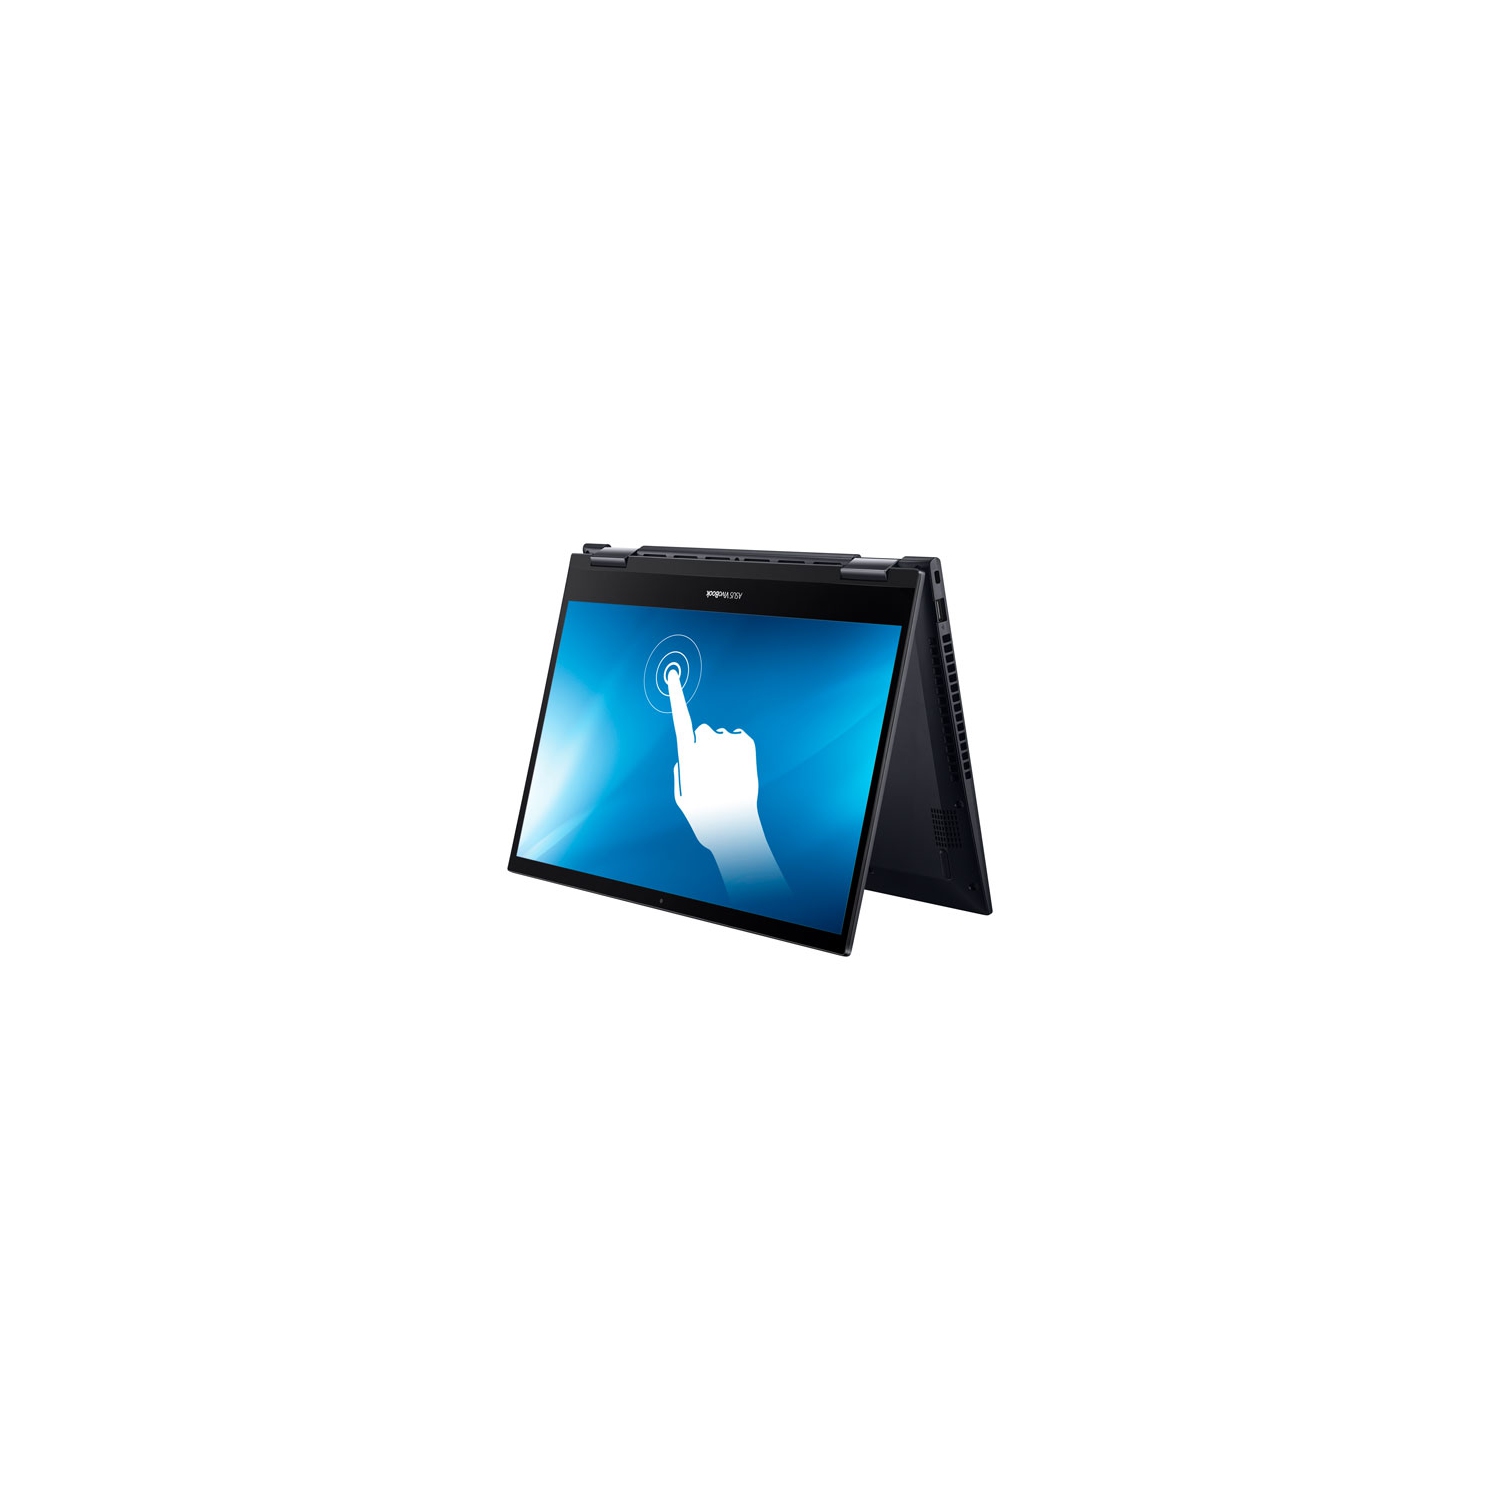 ASUS VivoBook Flip 14" Touchscreen 2-in-1 Laptop (AMD Ryzen 5 5500U/512GB SSD/12GB RAM/Windows 10) - Open Box